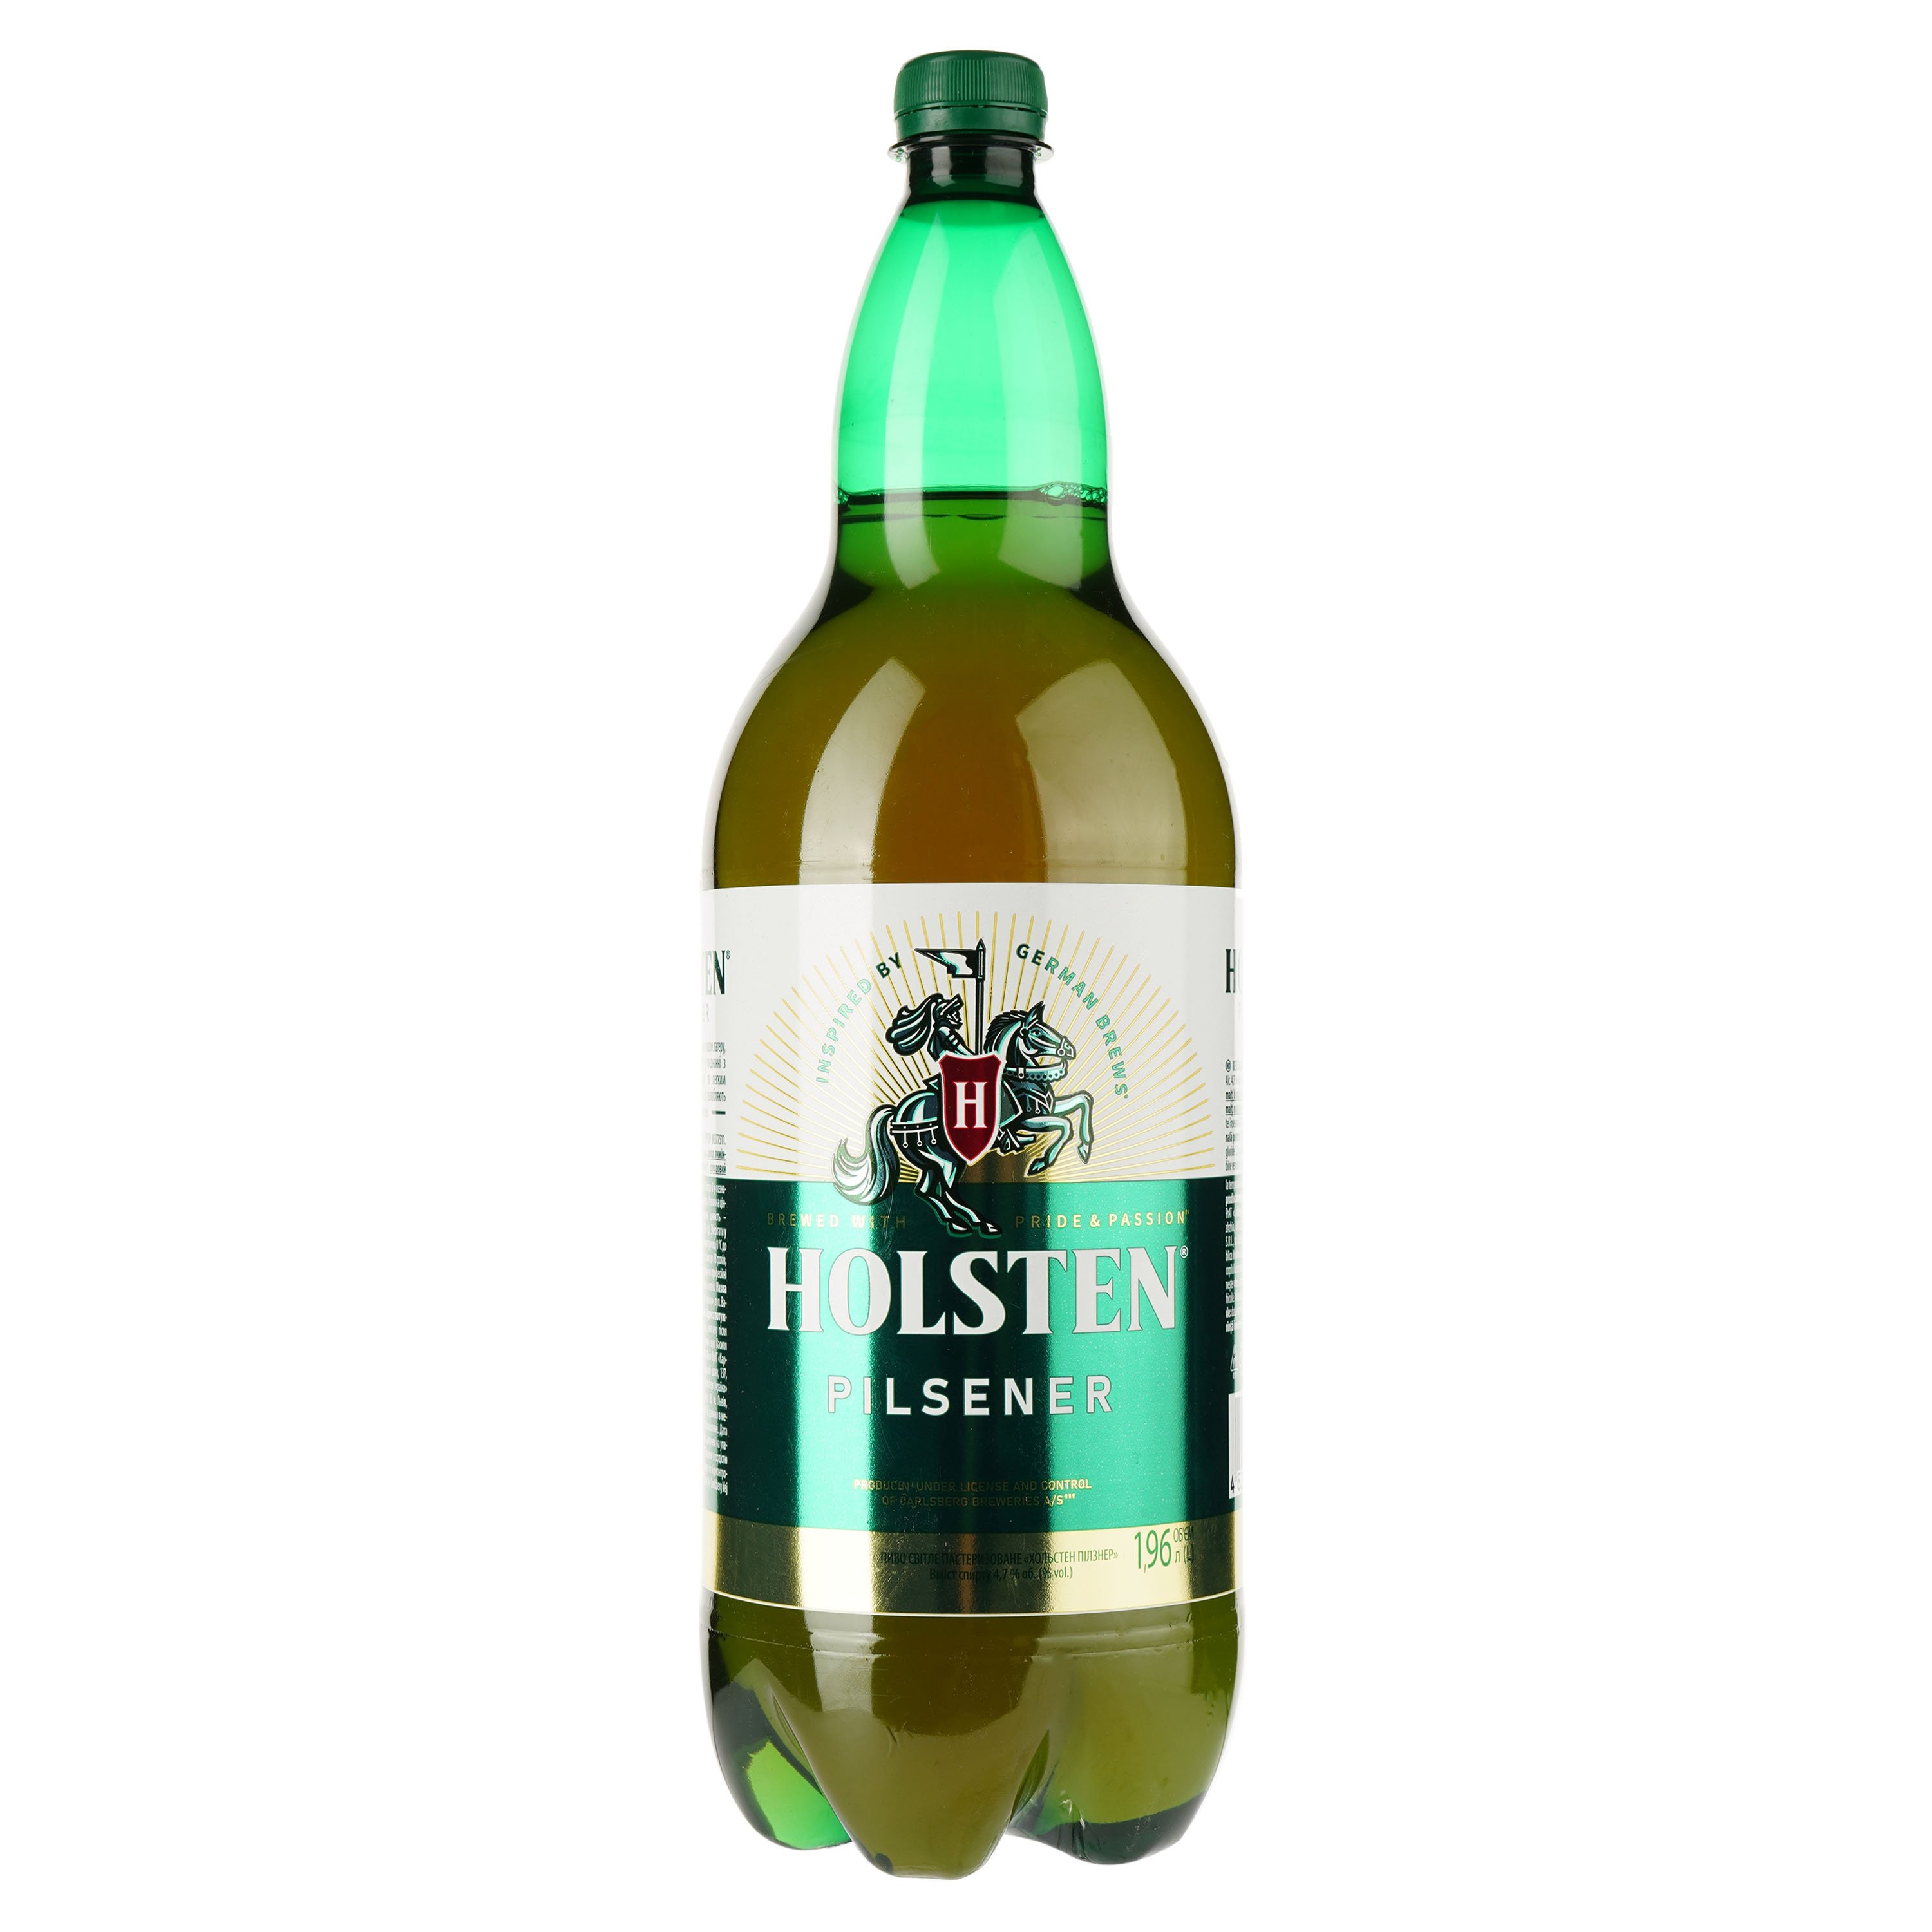 Пиво Holsten Pilsener, светлое, 4,7%, 1,96 л (909344) - фото 1